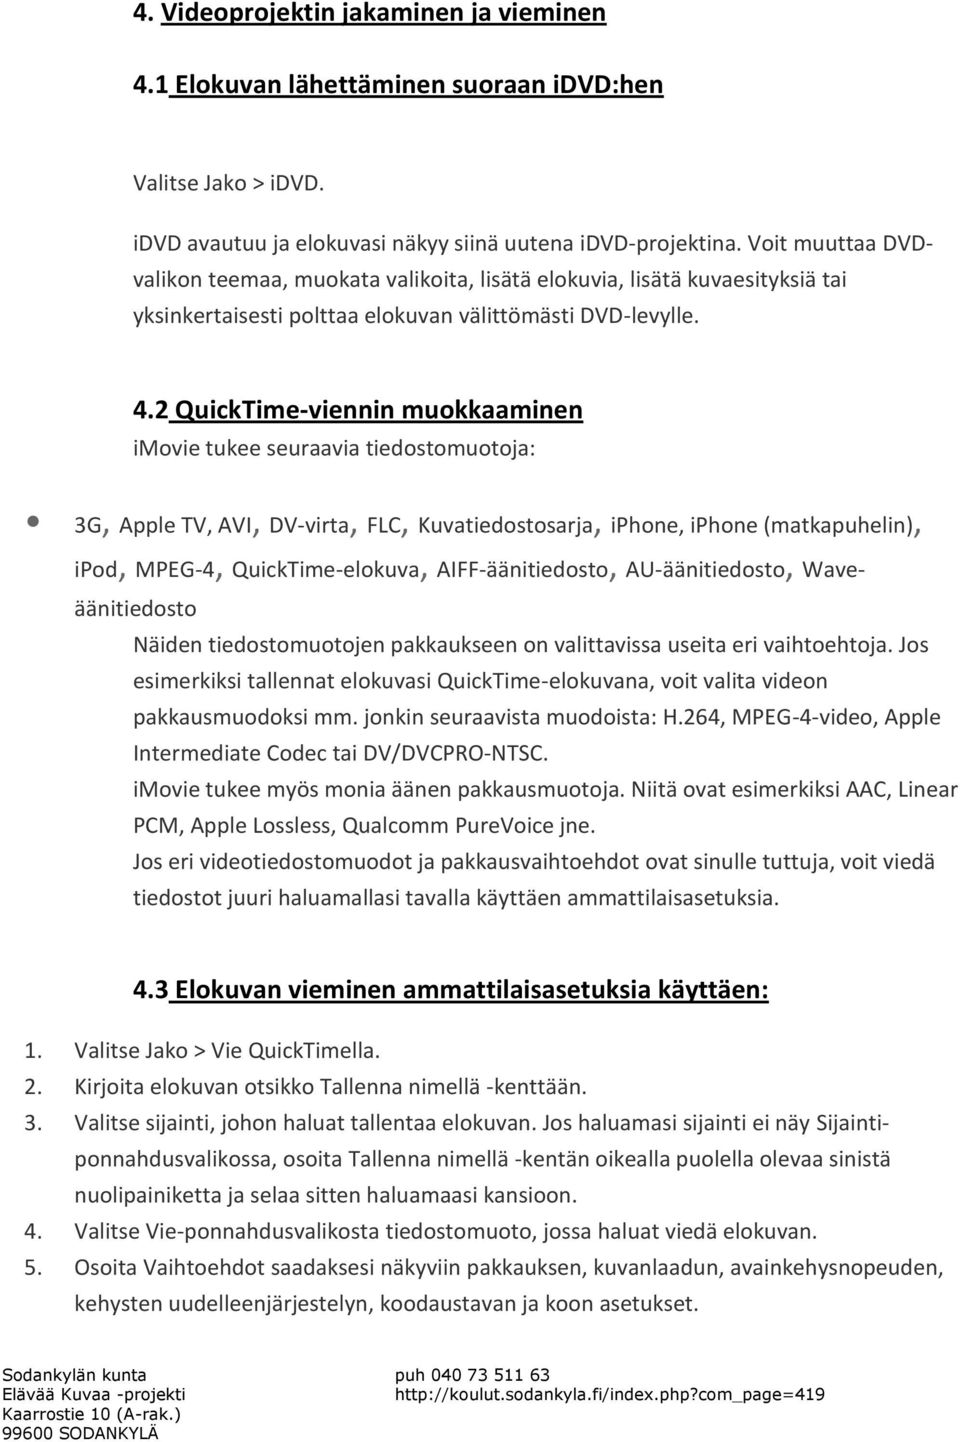 2 QuickTime-viennin muokkaaminen imovie tukee seuraavia tiedostomuotoja: 3G, Apple TV, AVI, DV-virta, FLC, Kuvatiedostosarja, iphone, iphone (matkapuhelin), ipod, MPEG-4, QuickTime-elokuva,